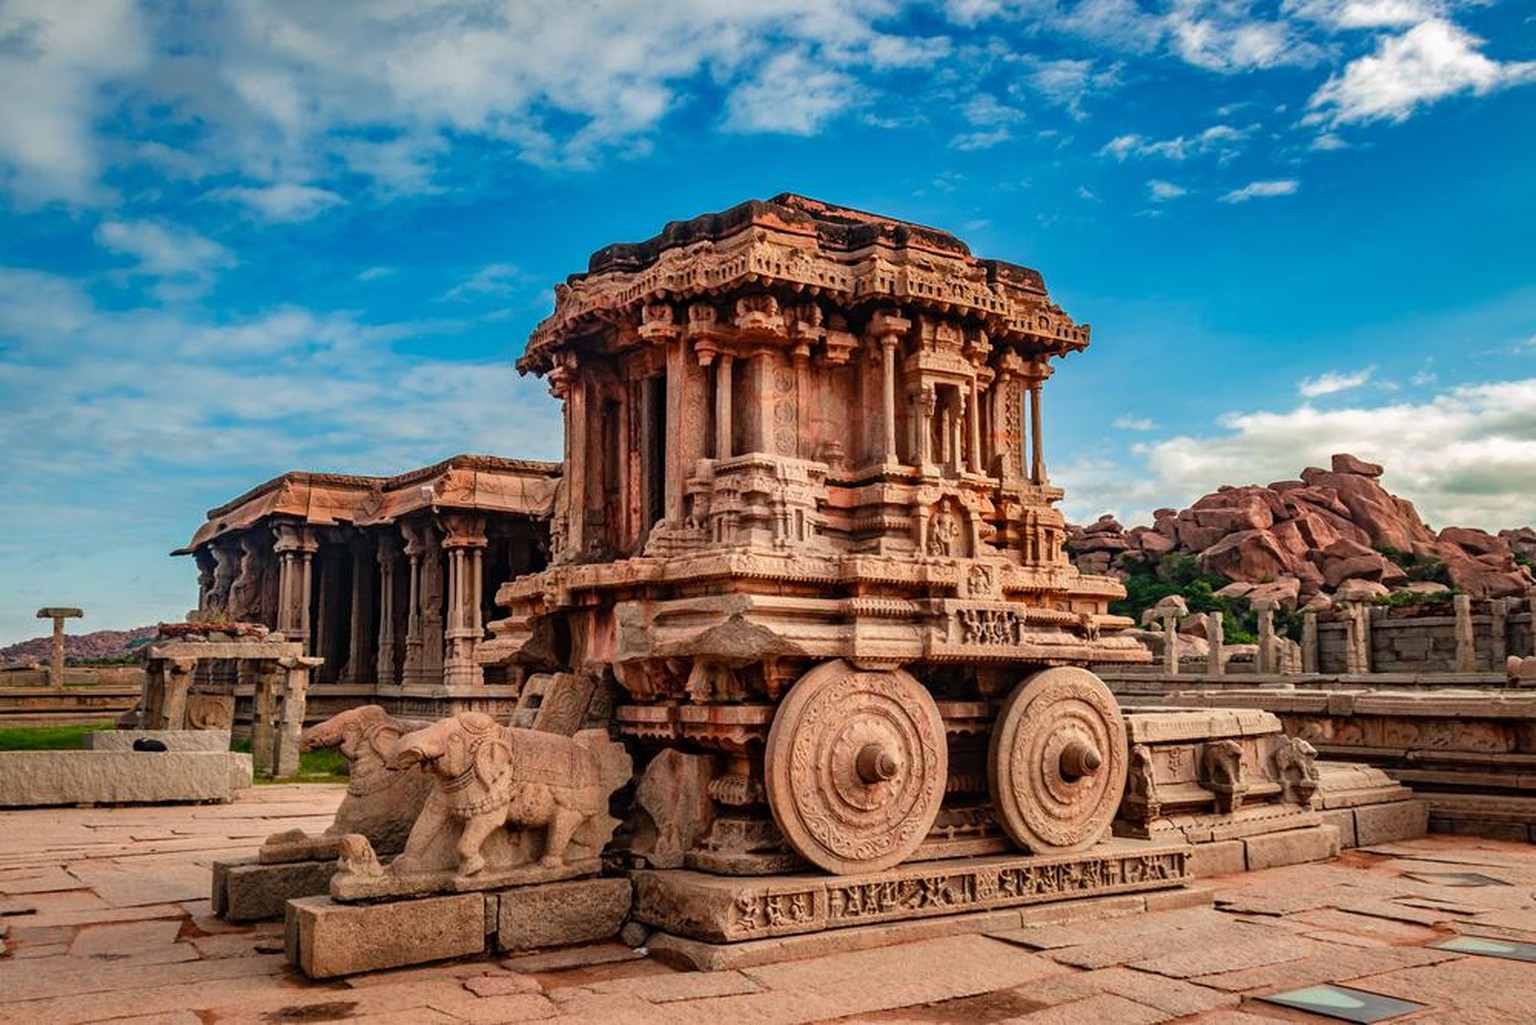 Ancienne capital de l'empire Vijayanagara, cette ville a été détruite au XVIe siècle. Les bâtiments restants tels que les forts ou temples sont restés, eux, intacts, ce qui leur a valu le statut de pa ...